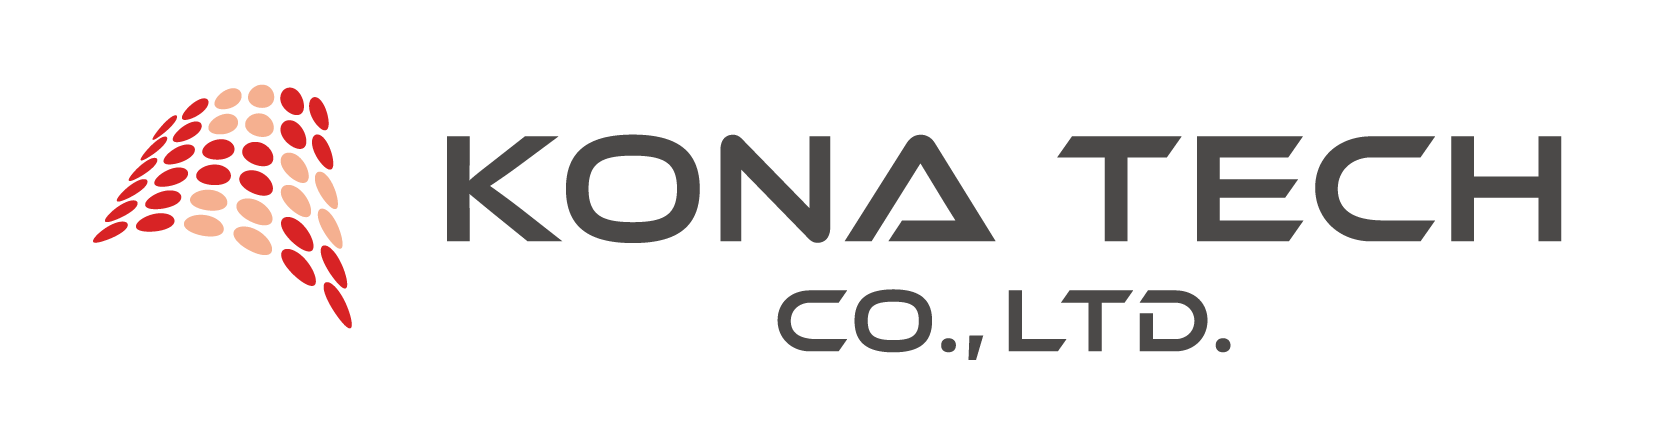 コナテック株式会社 | KONA TECH